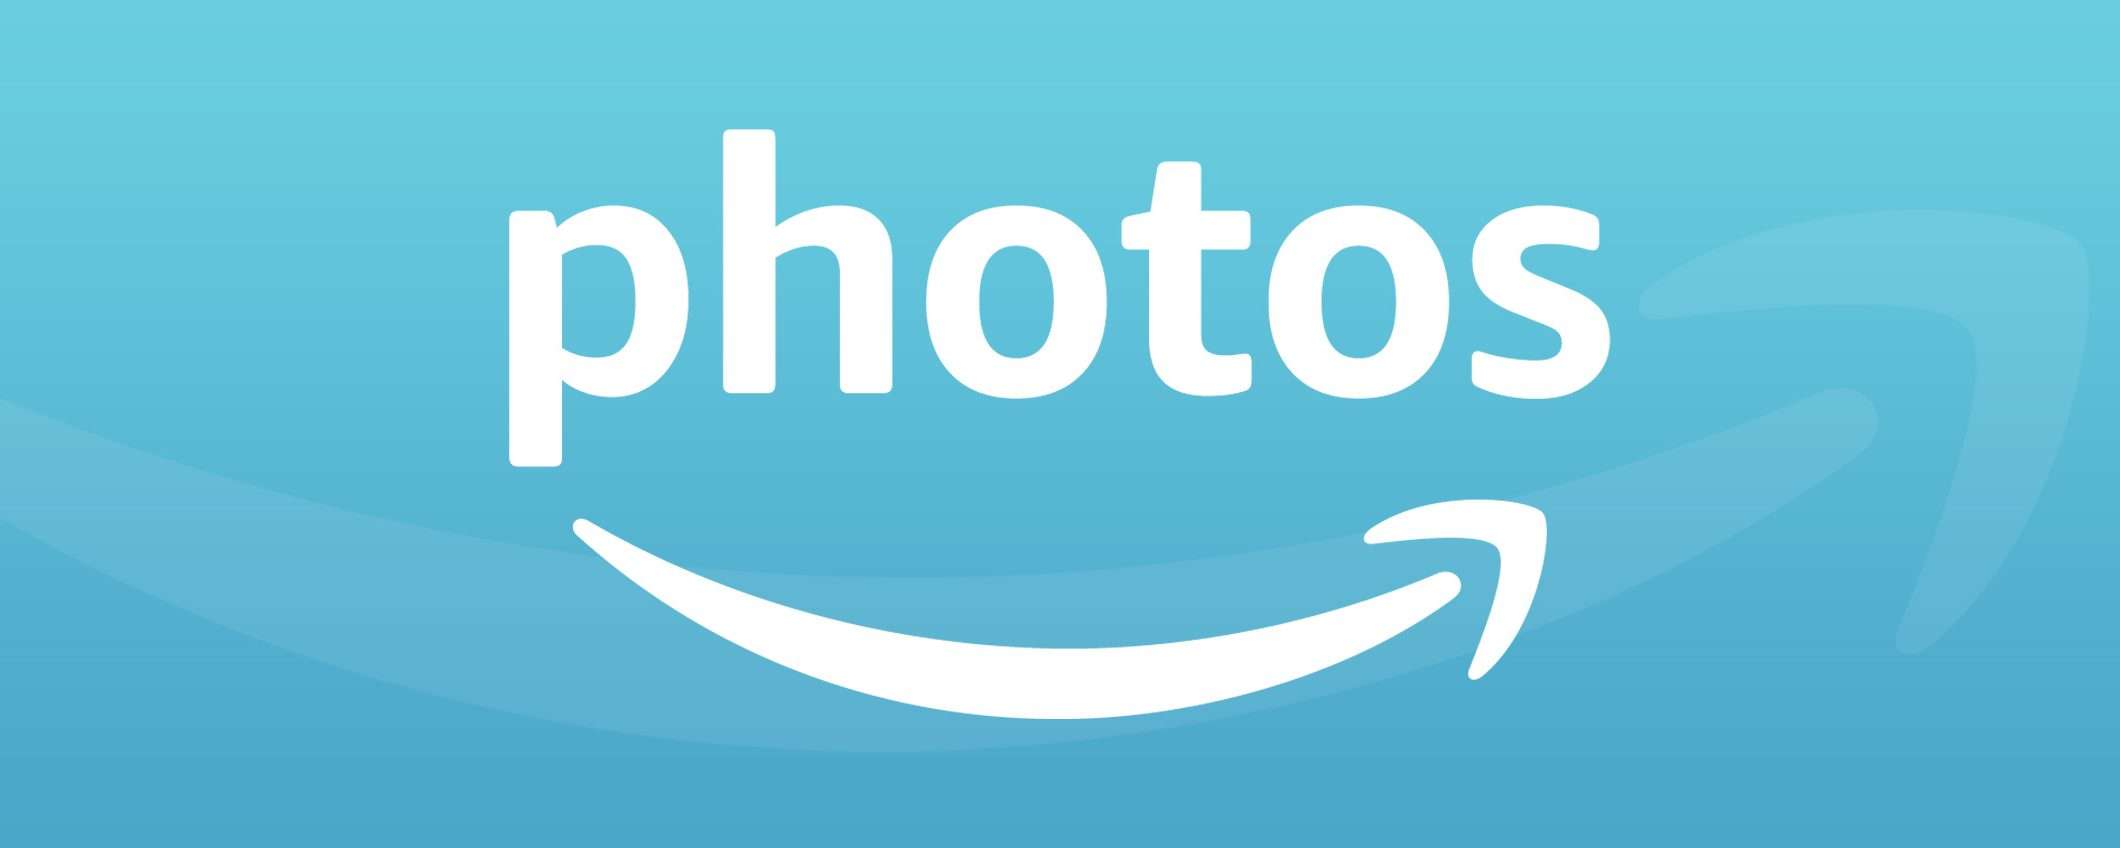 Amazon Photos, la nuova versione arriva su Android